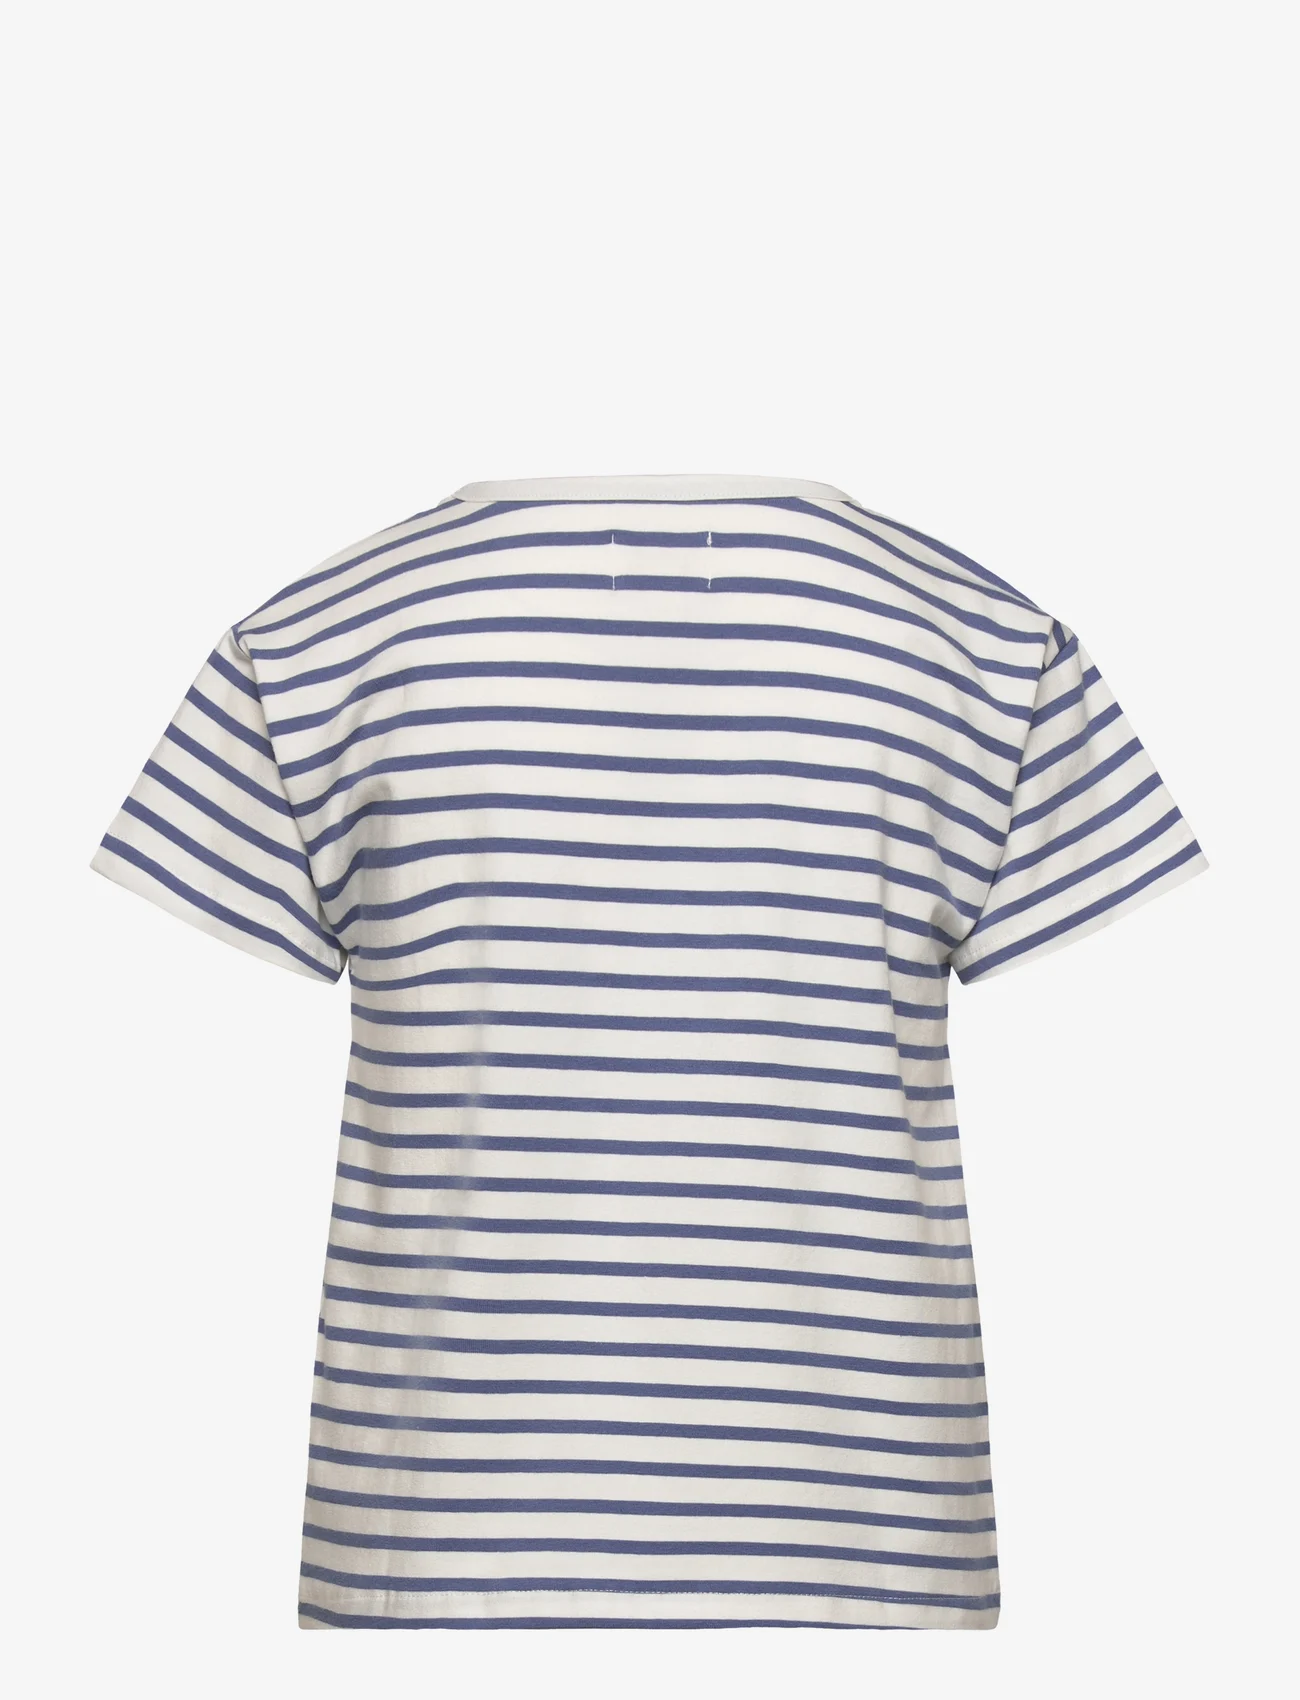 Creamie - T-shirt SS Stripe - kurzärmelige - colony blue - 1